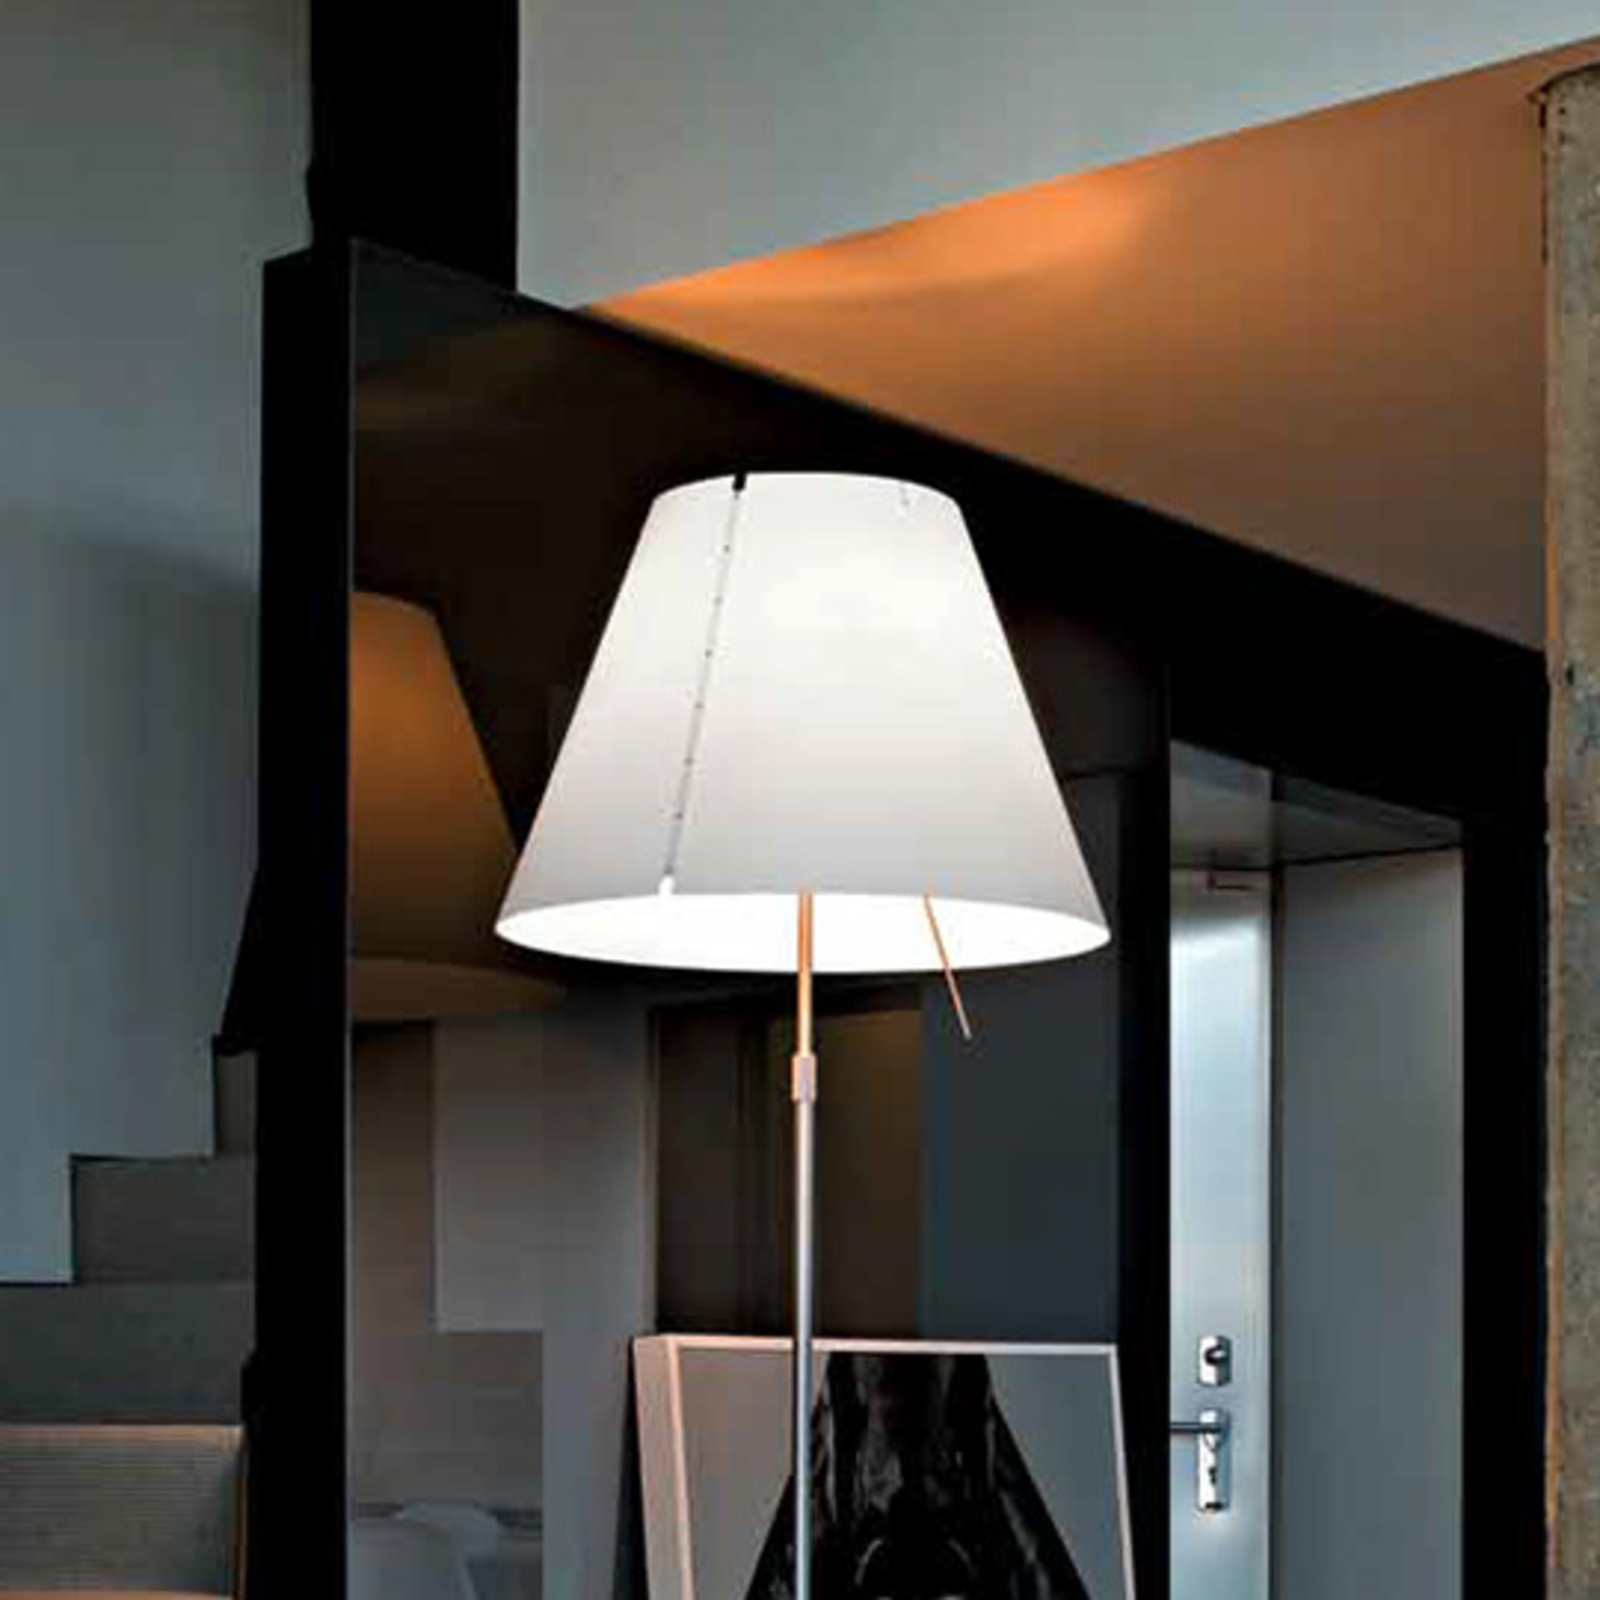 Luceplan Grande Costanza - floor lamp